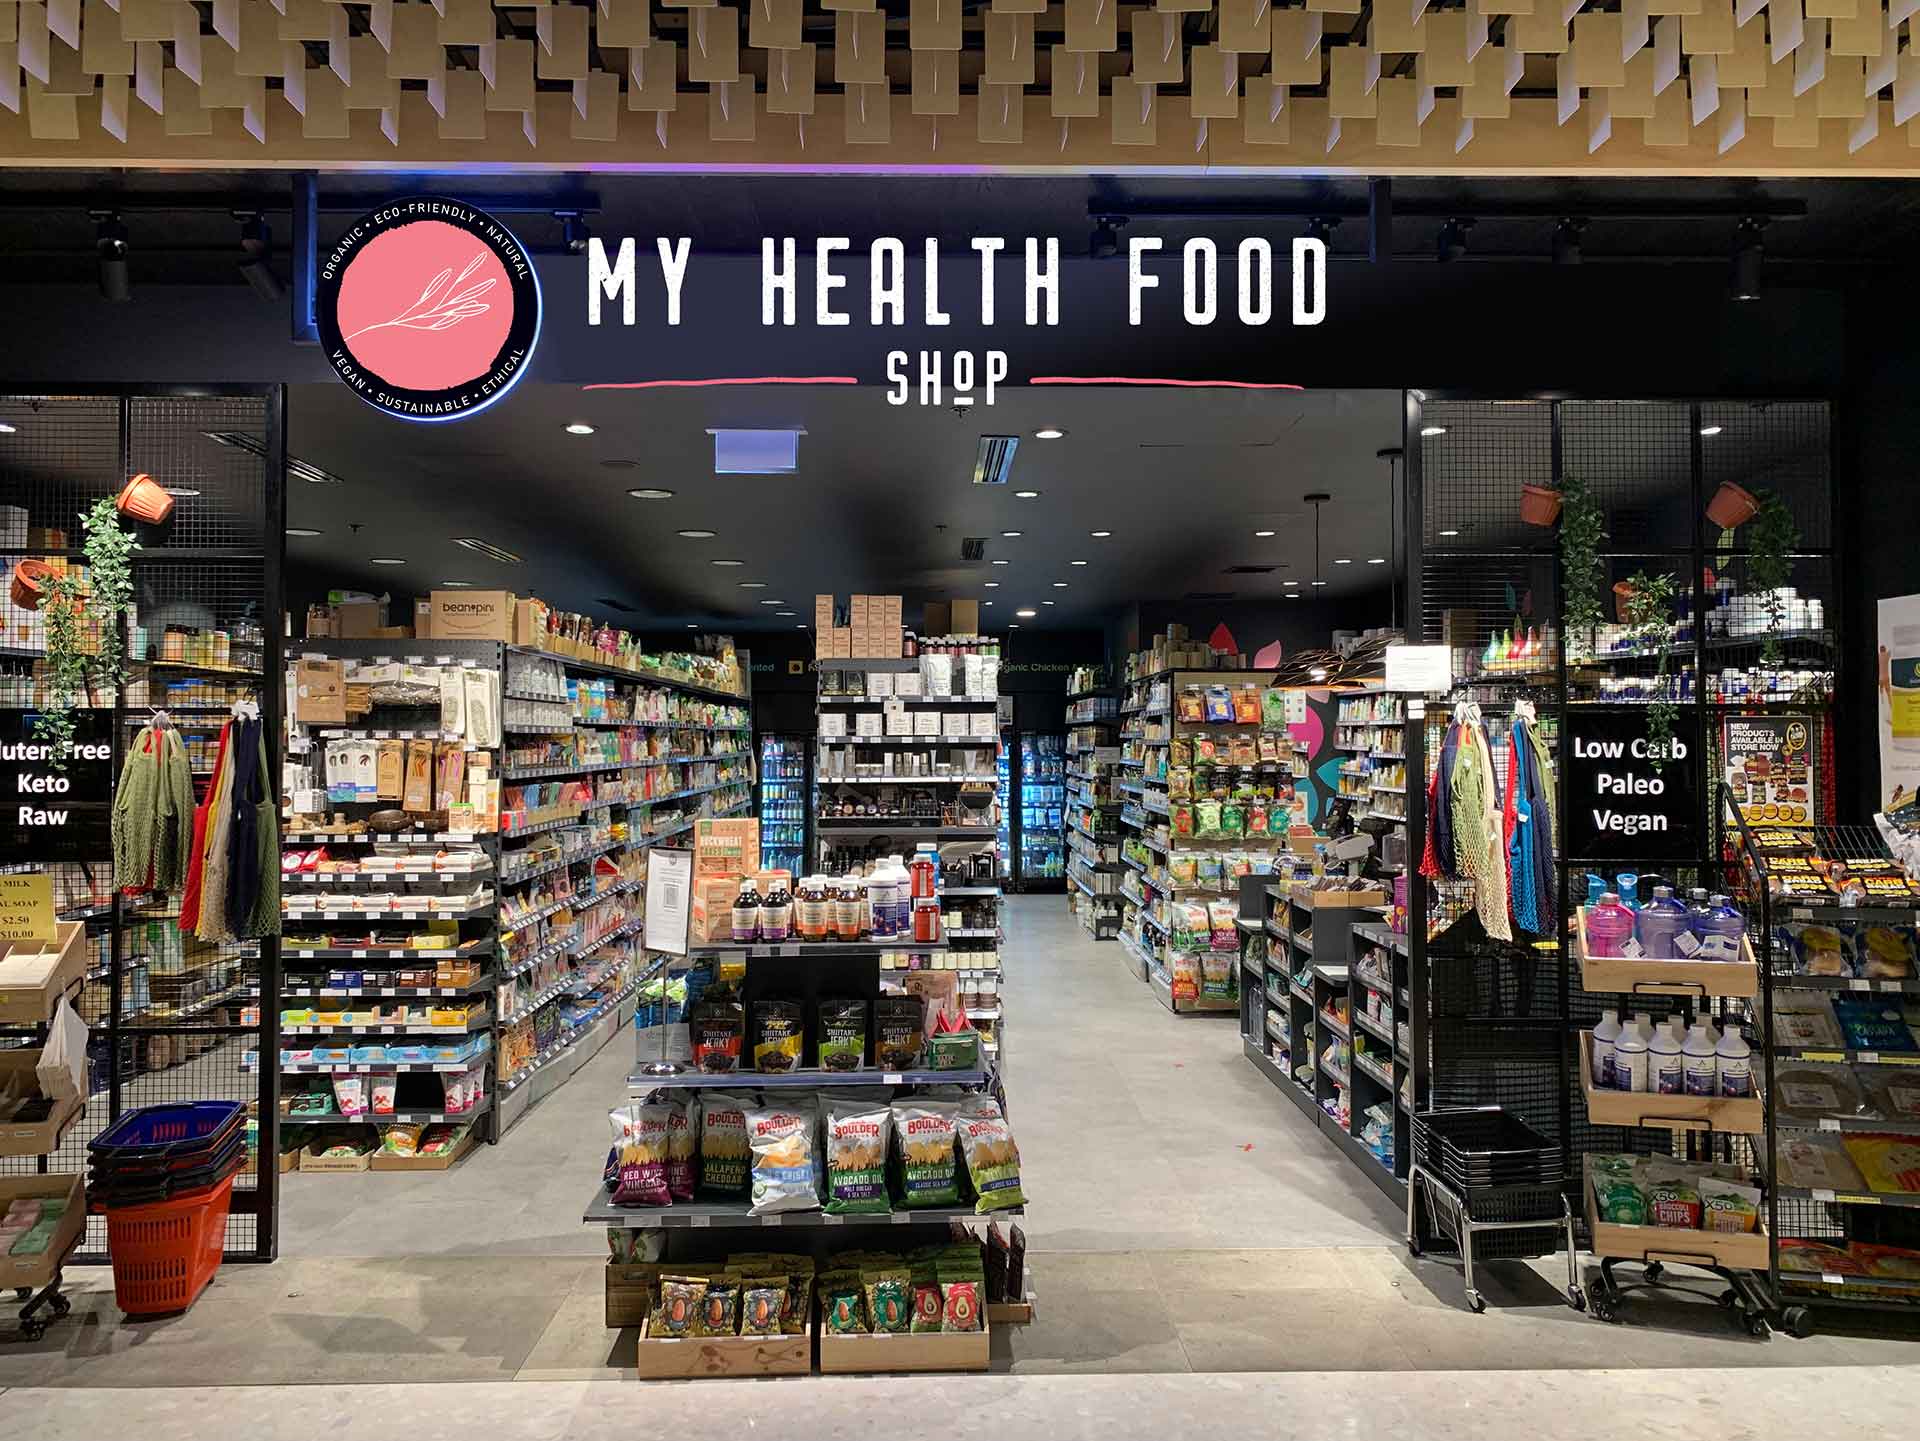 My Health Food Shop in Sydney